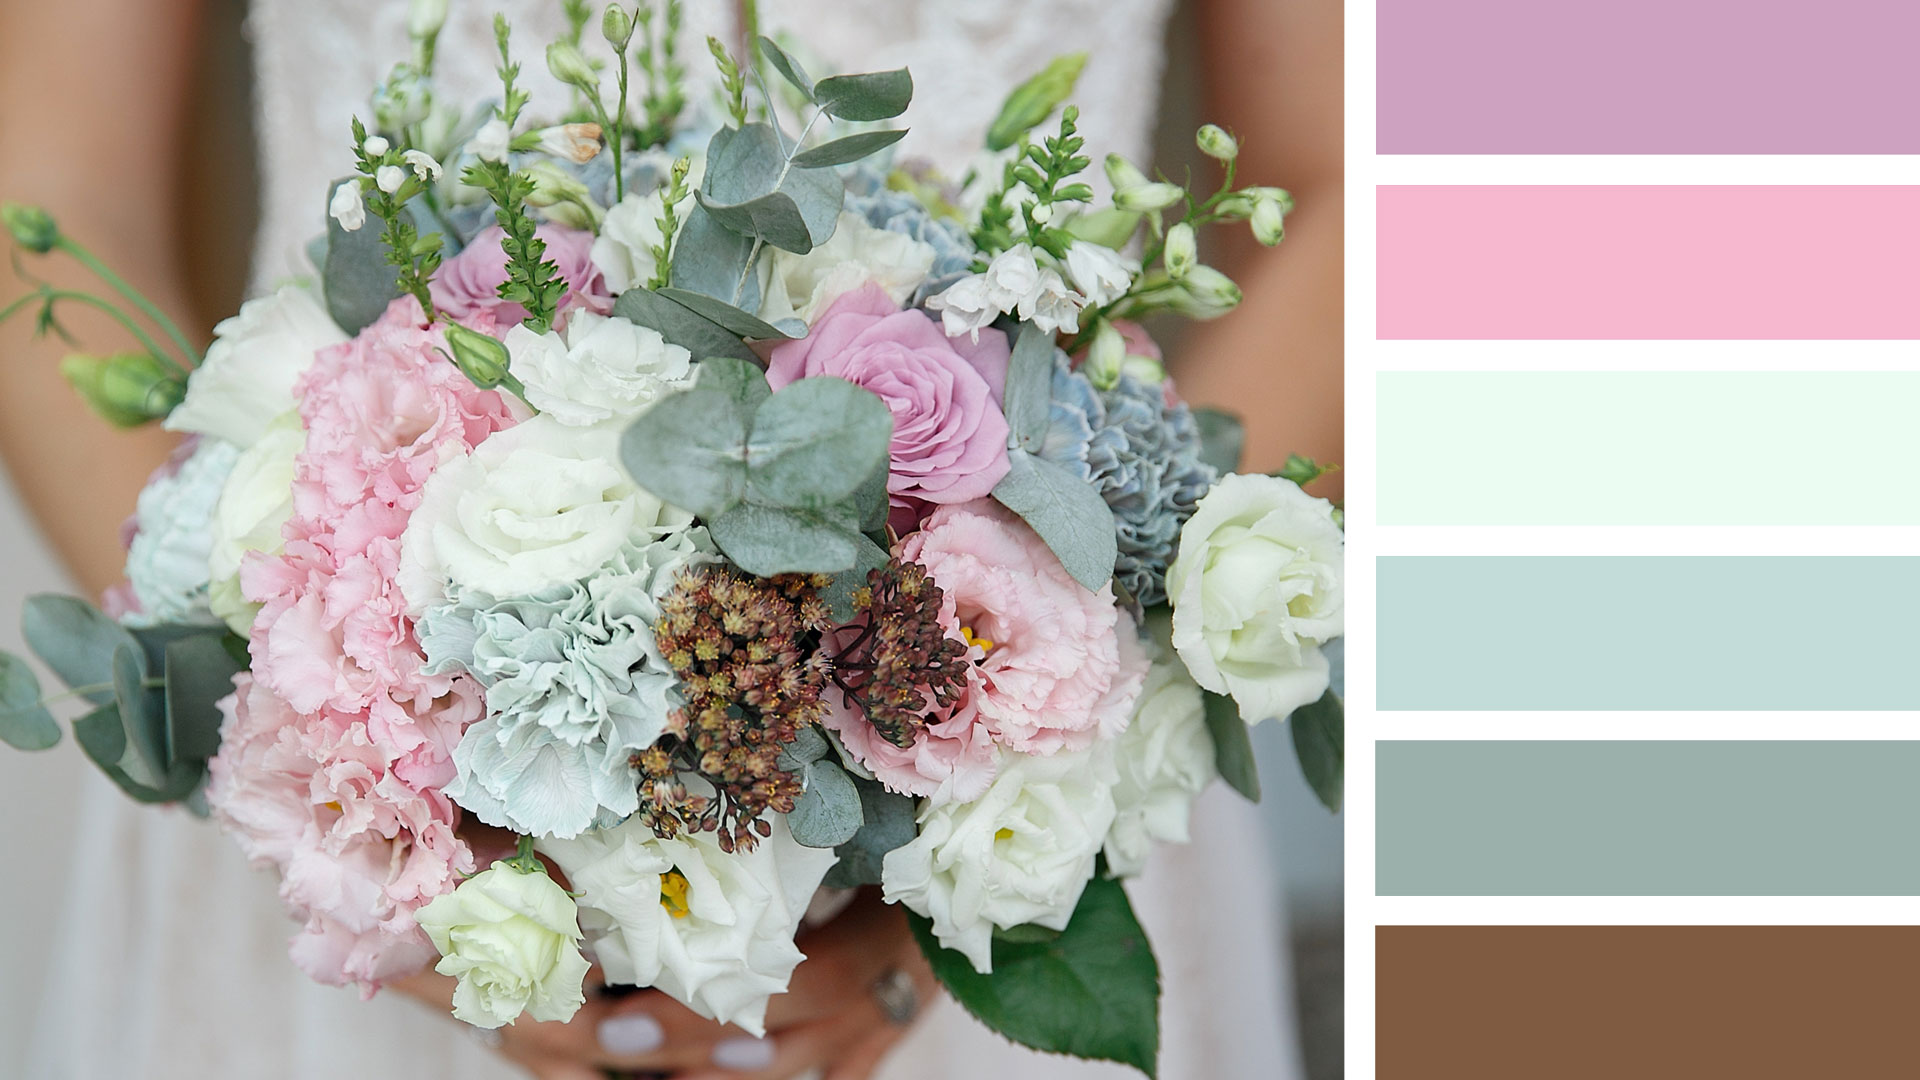 Рецепт свадебного букета круглой формы. Палитра: розовый, белый, серо-голубой, зеленый.